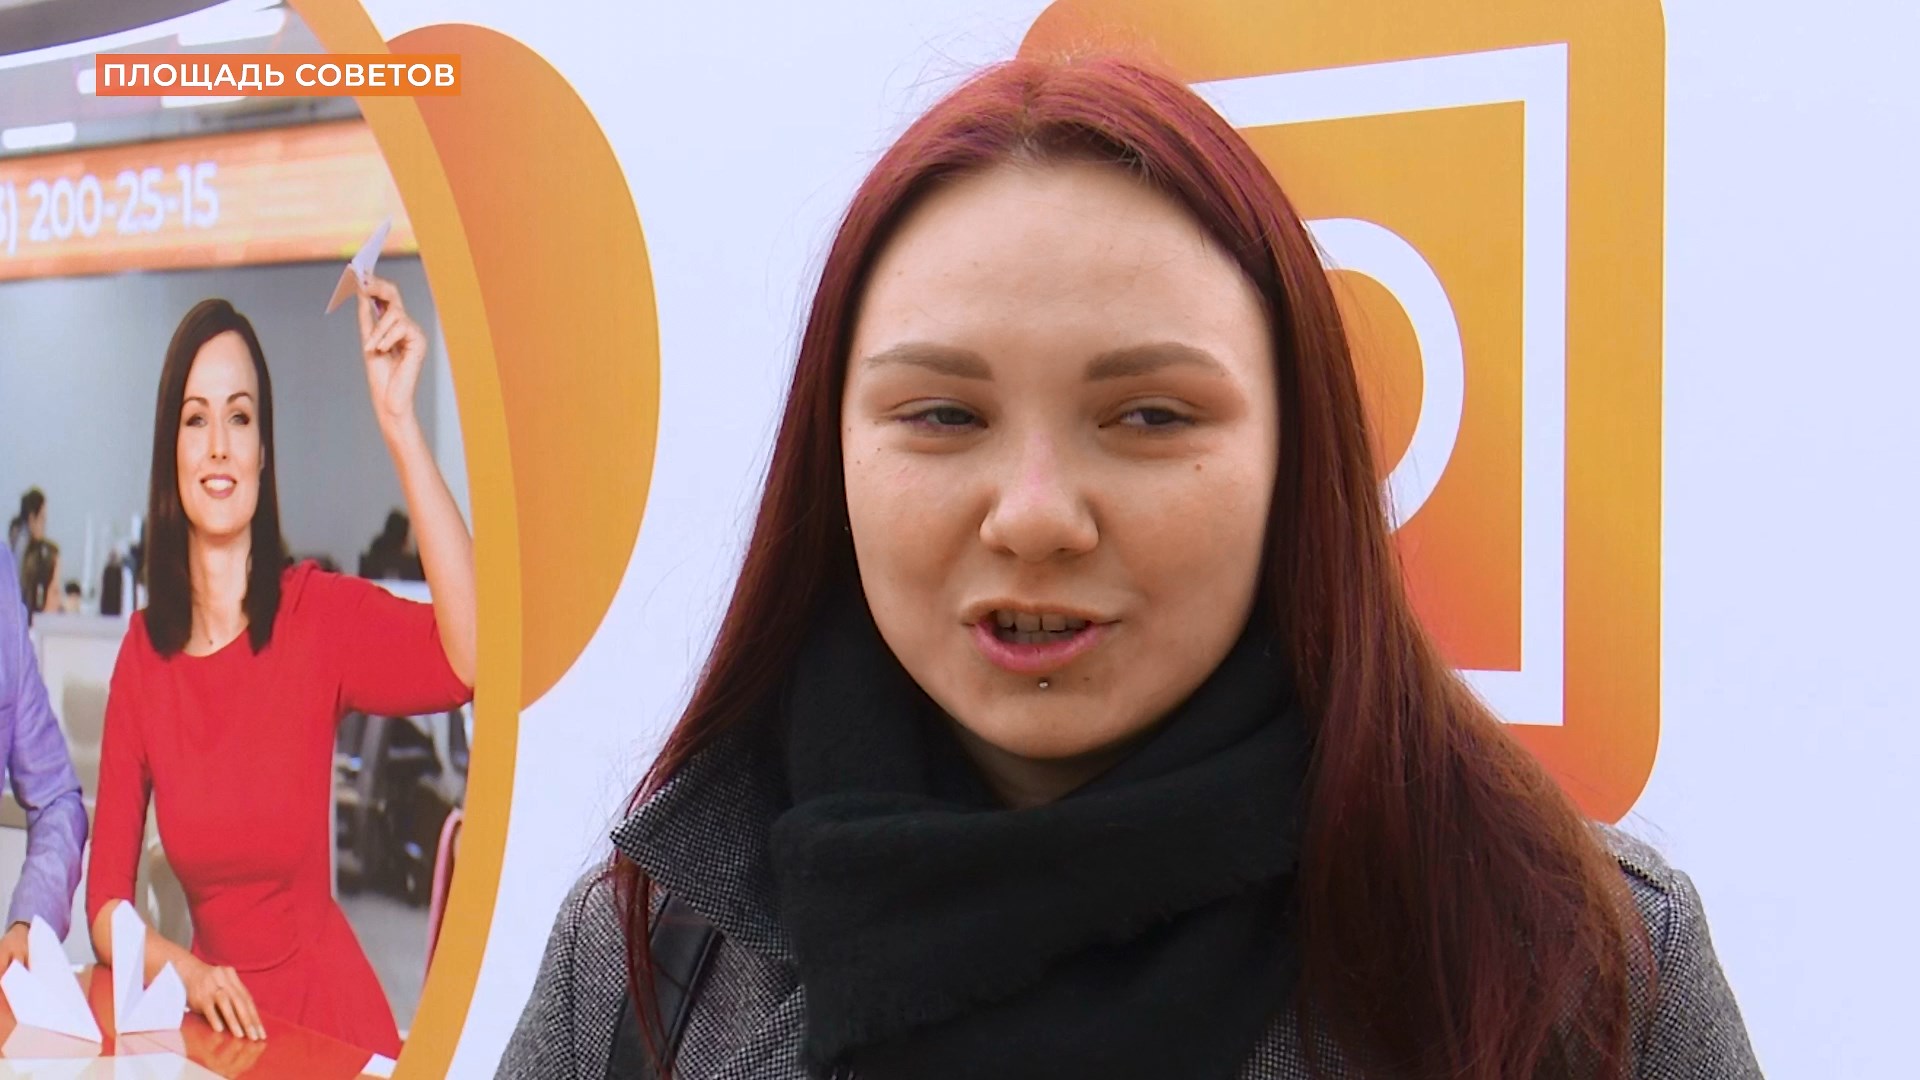 #СвоихПоздравляем: пожелания бойцам от ростовчан